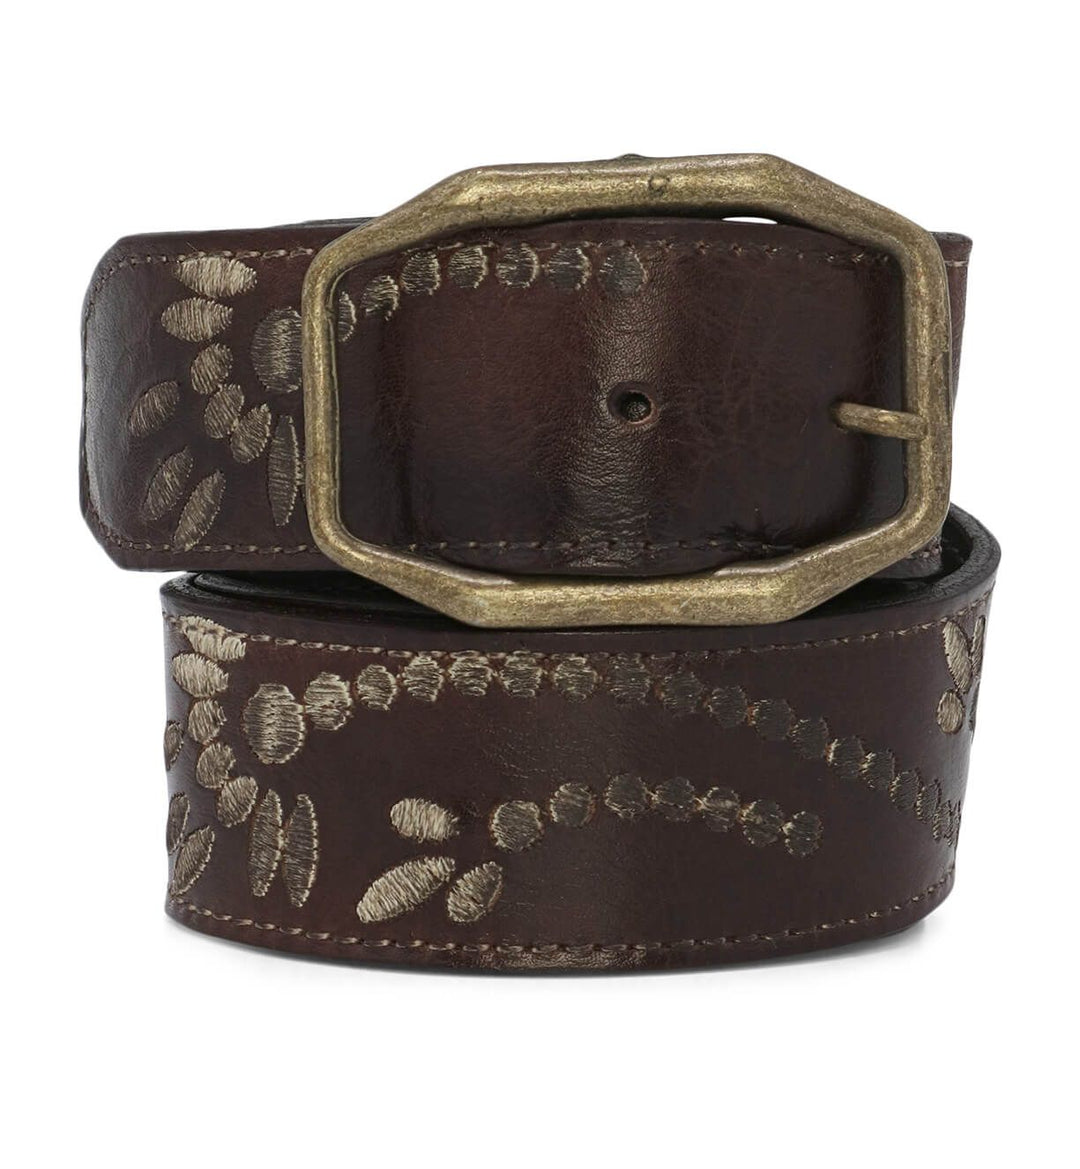 Bedstu Mohawk Leather Belt, Teak Rustic